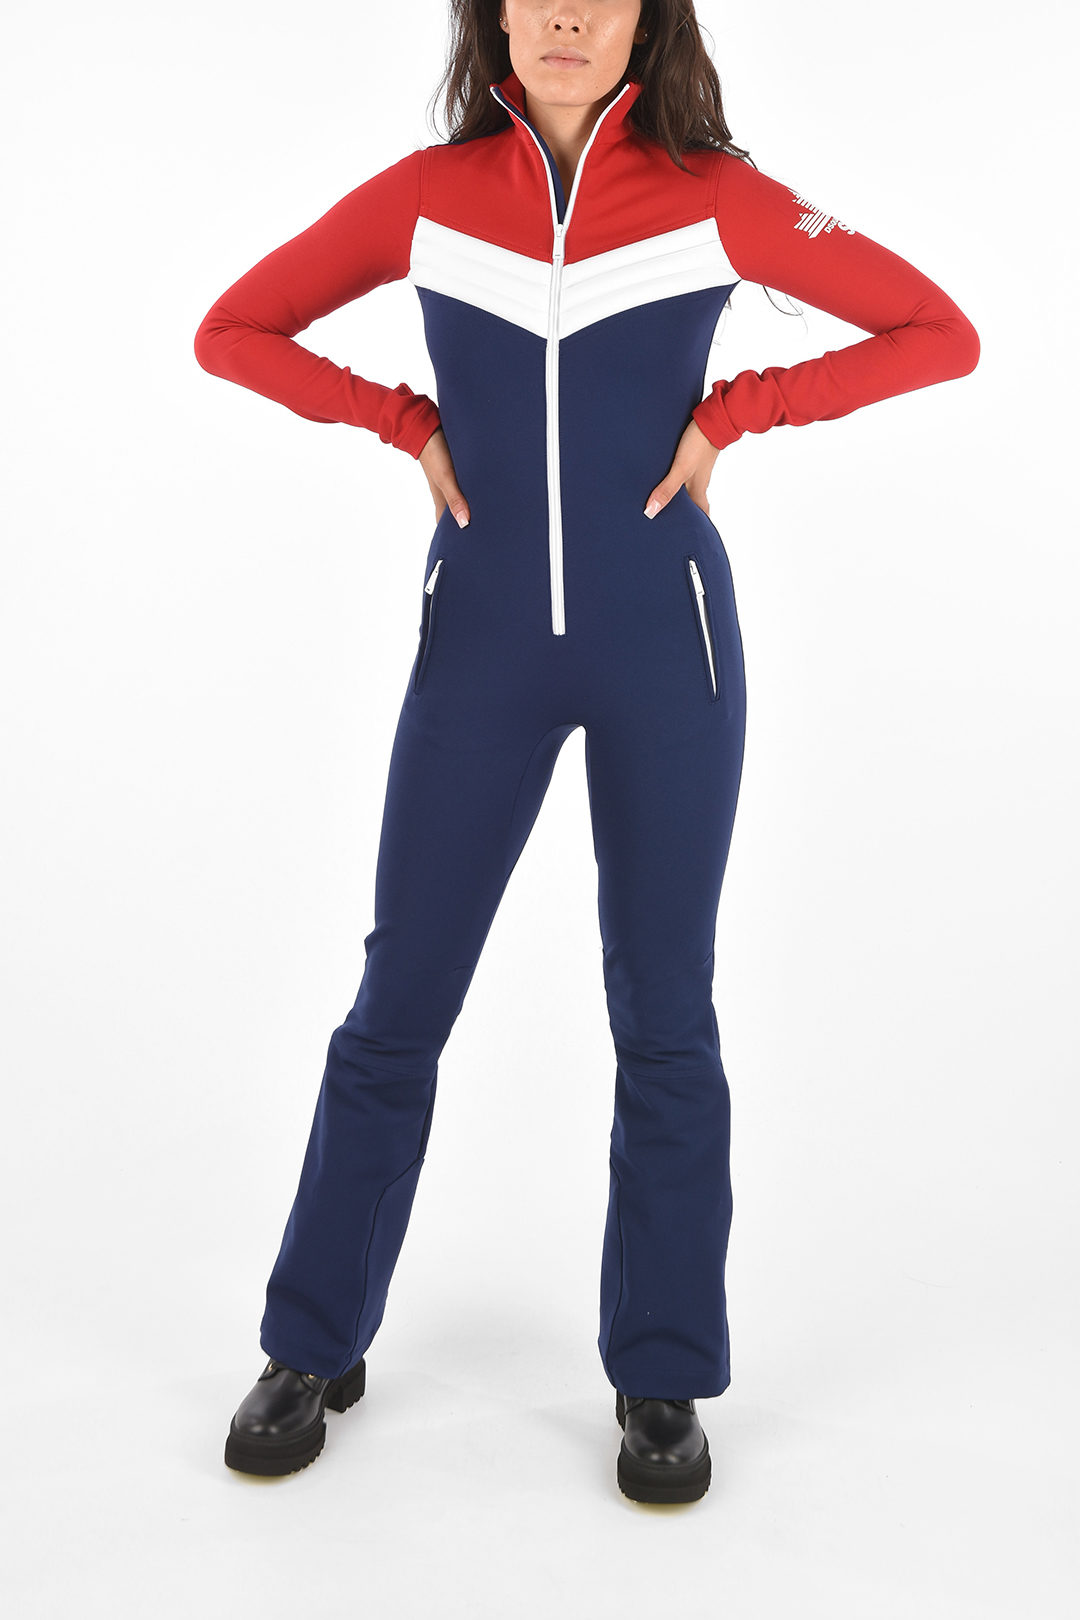 Dsquared2 SKI Super-Stretch Logo Printed Ski Jumpsuit women